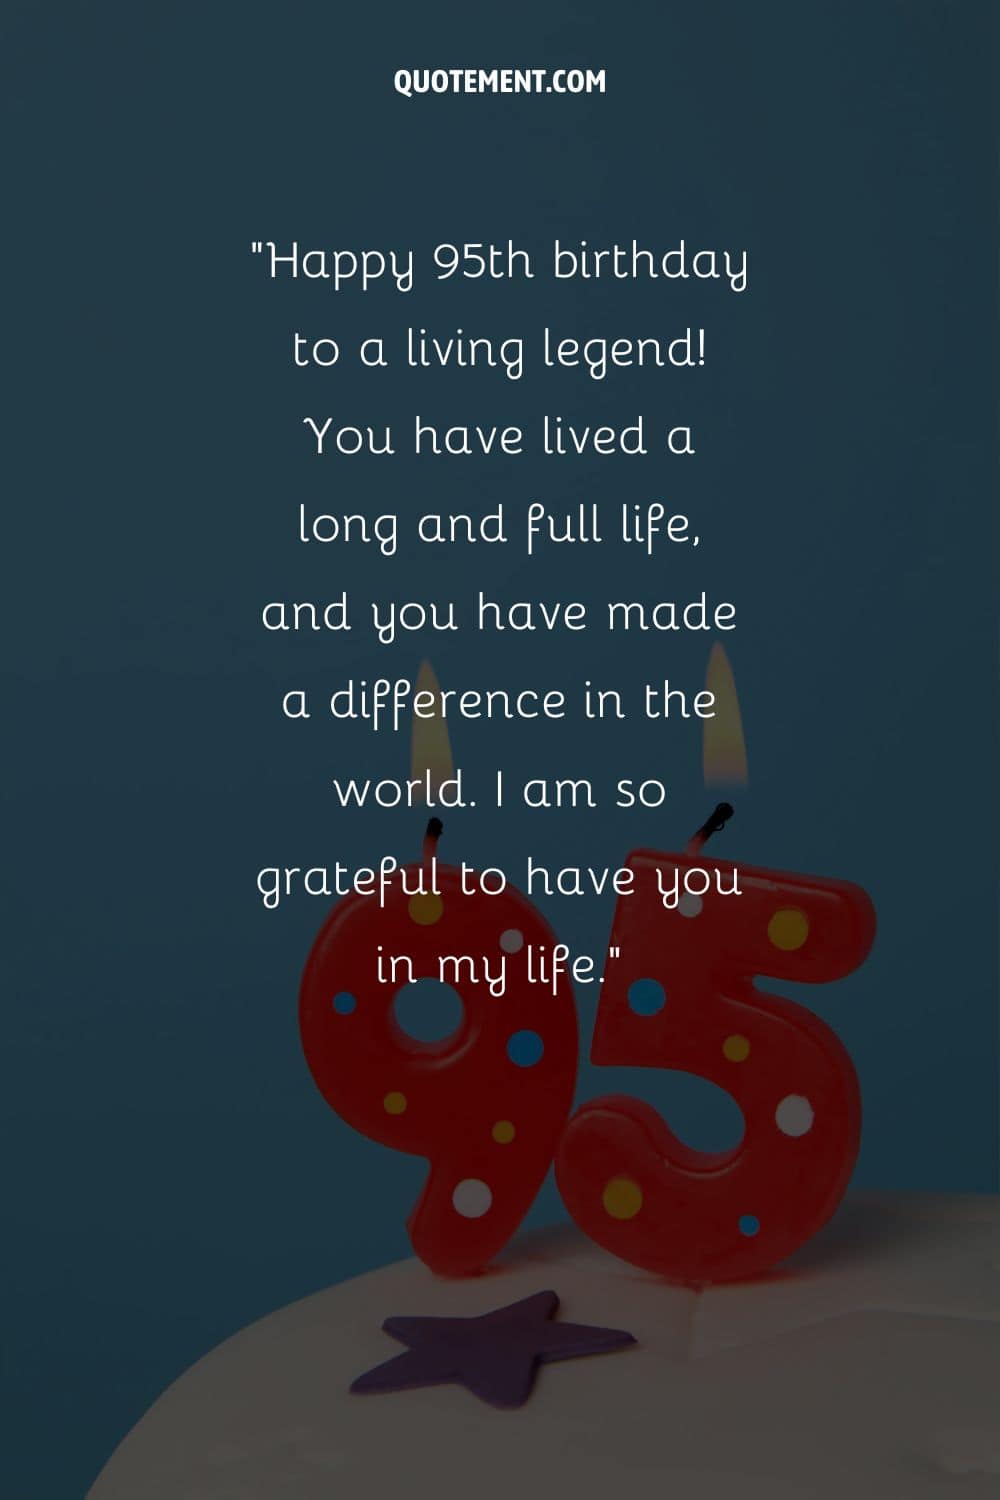 "¡Feliz 95 cumpleaños a una leyenda viva! Has vivido una vida larga y plena, y has marcado la diferencia en el mundo. Estoy muy agradecido de tenerte en mi vida".